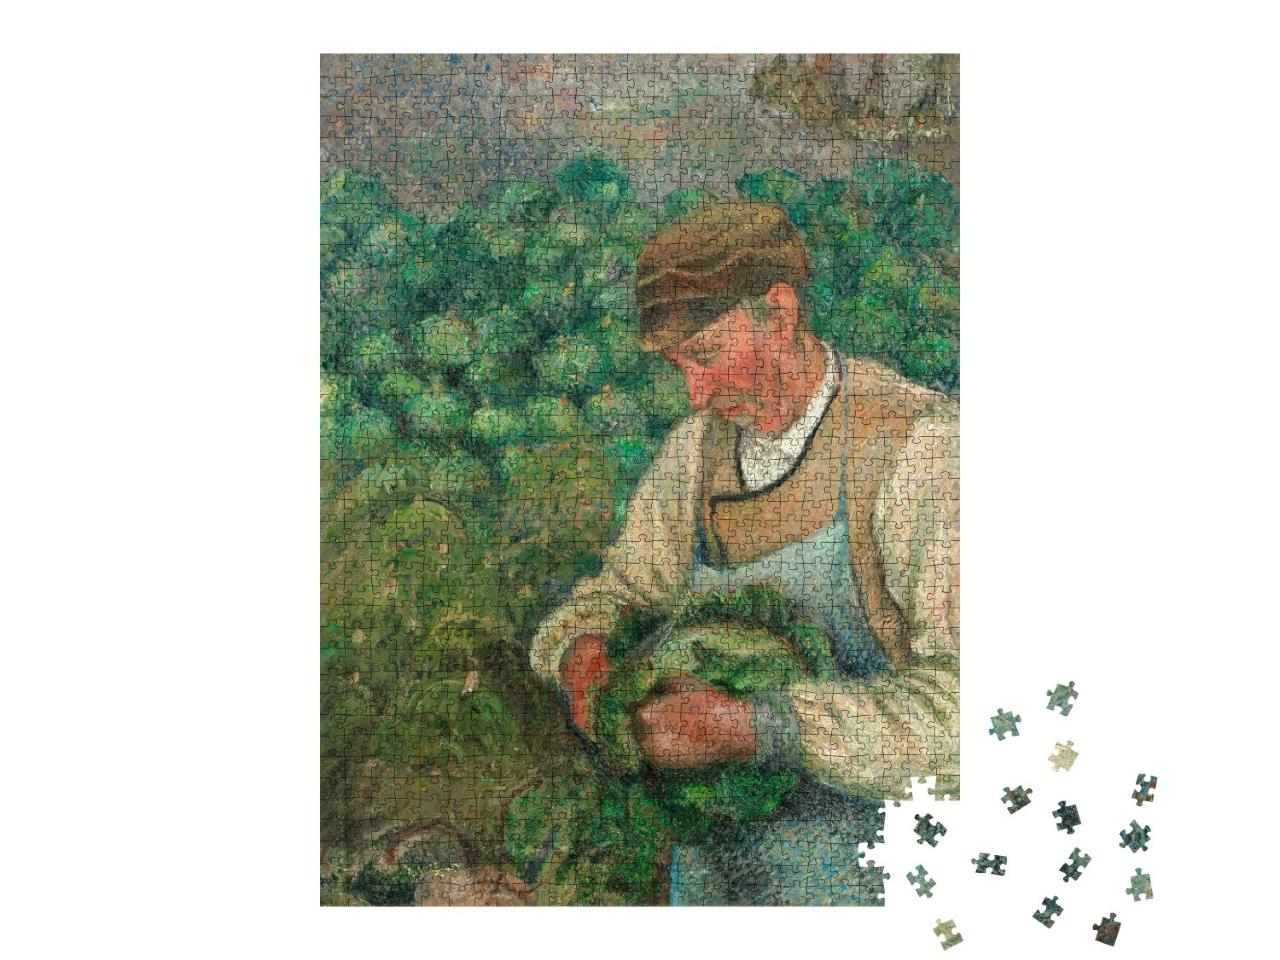 Puzzle 1000 Teile „Camille Pissarro - Der Gärtner - Alter Bauer mit Kraut“